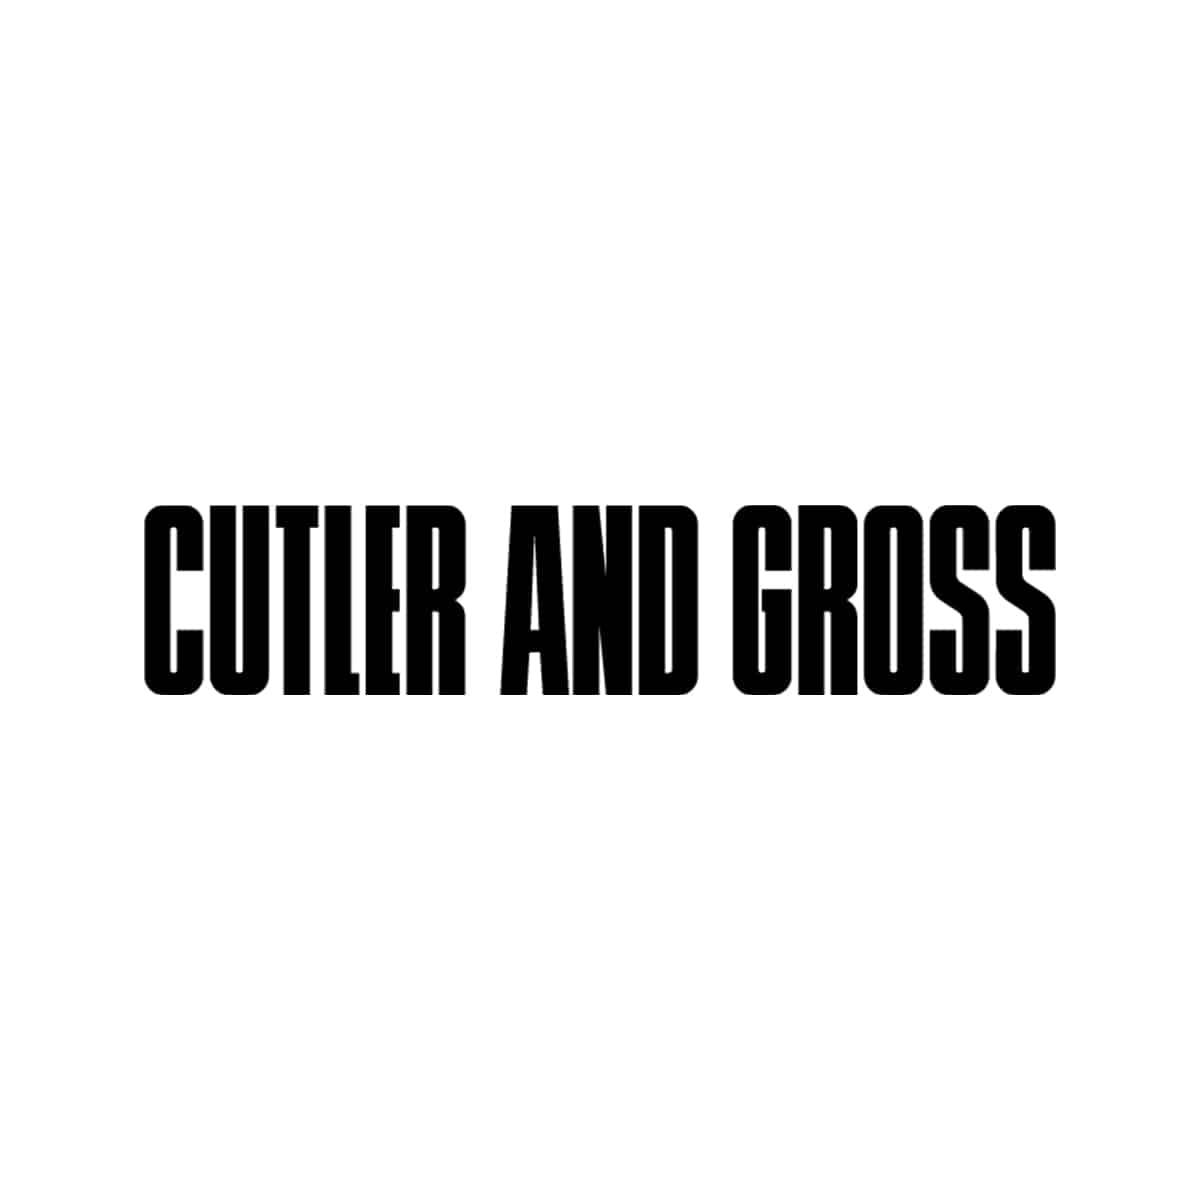 logo cutler and gross